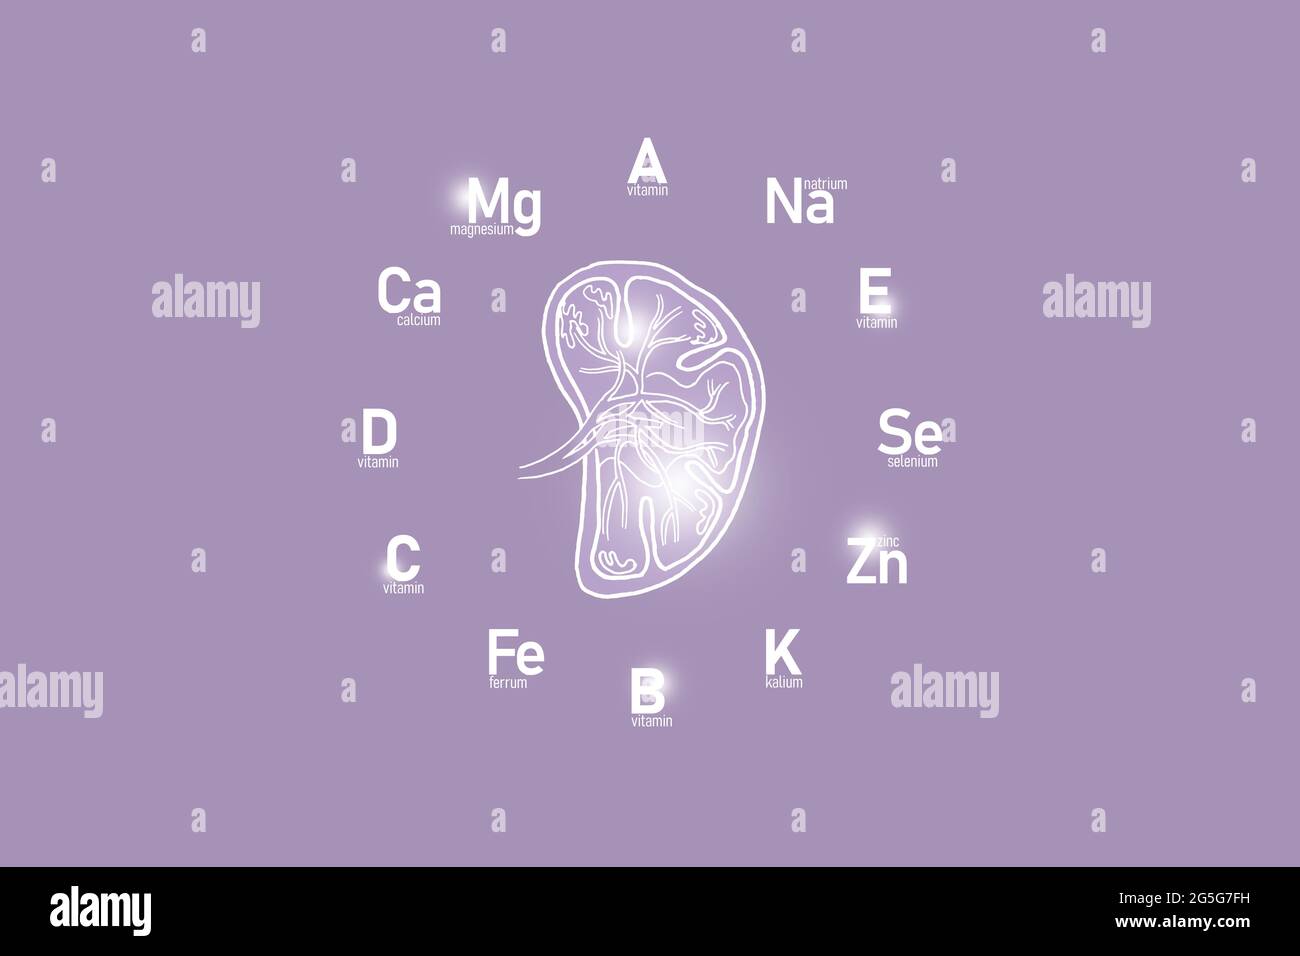 Stilisiertes Ziffernblatt mit lebenswichtigen Vitaminen und Mikroelementen für die menschliche Gesundheit, handgezeichnete Milz, lilafarbiger Hintergrund. Design-Modell für Gesundheitskonzepte. Stockfoto